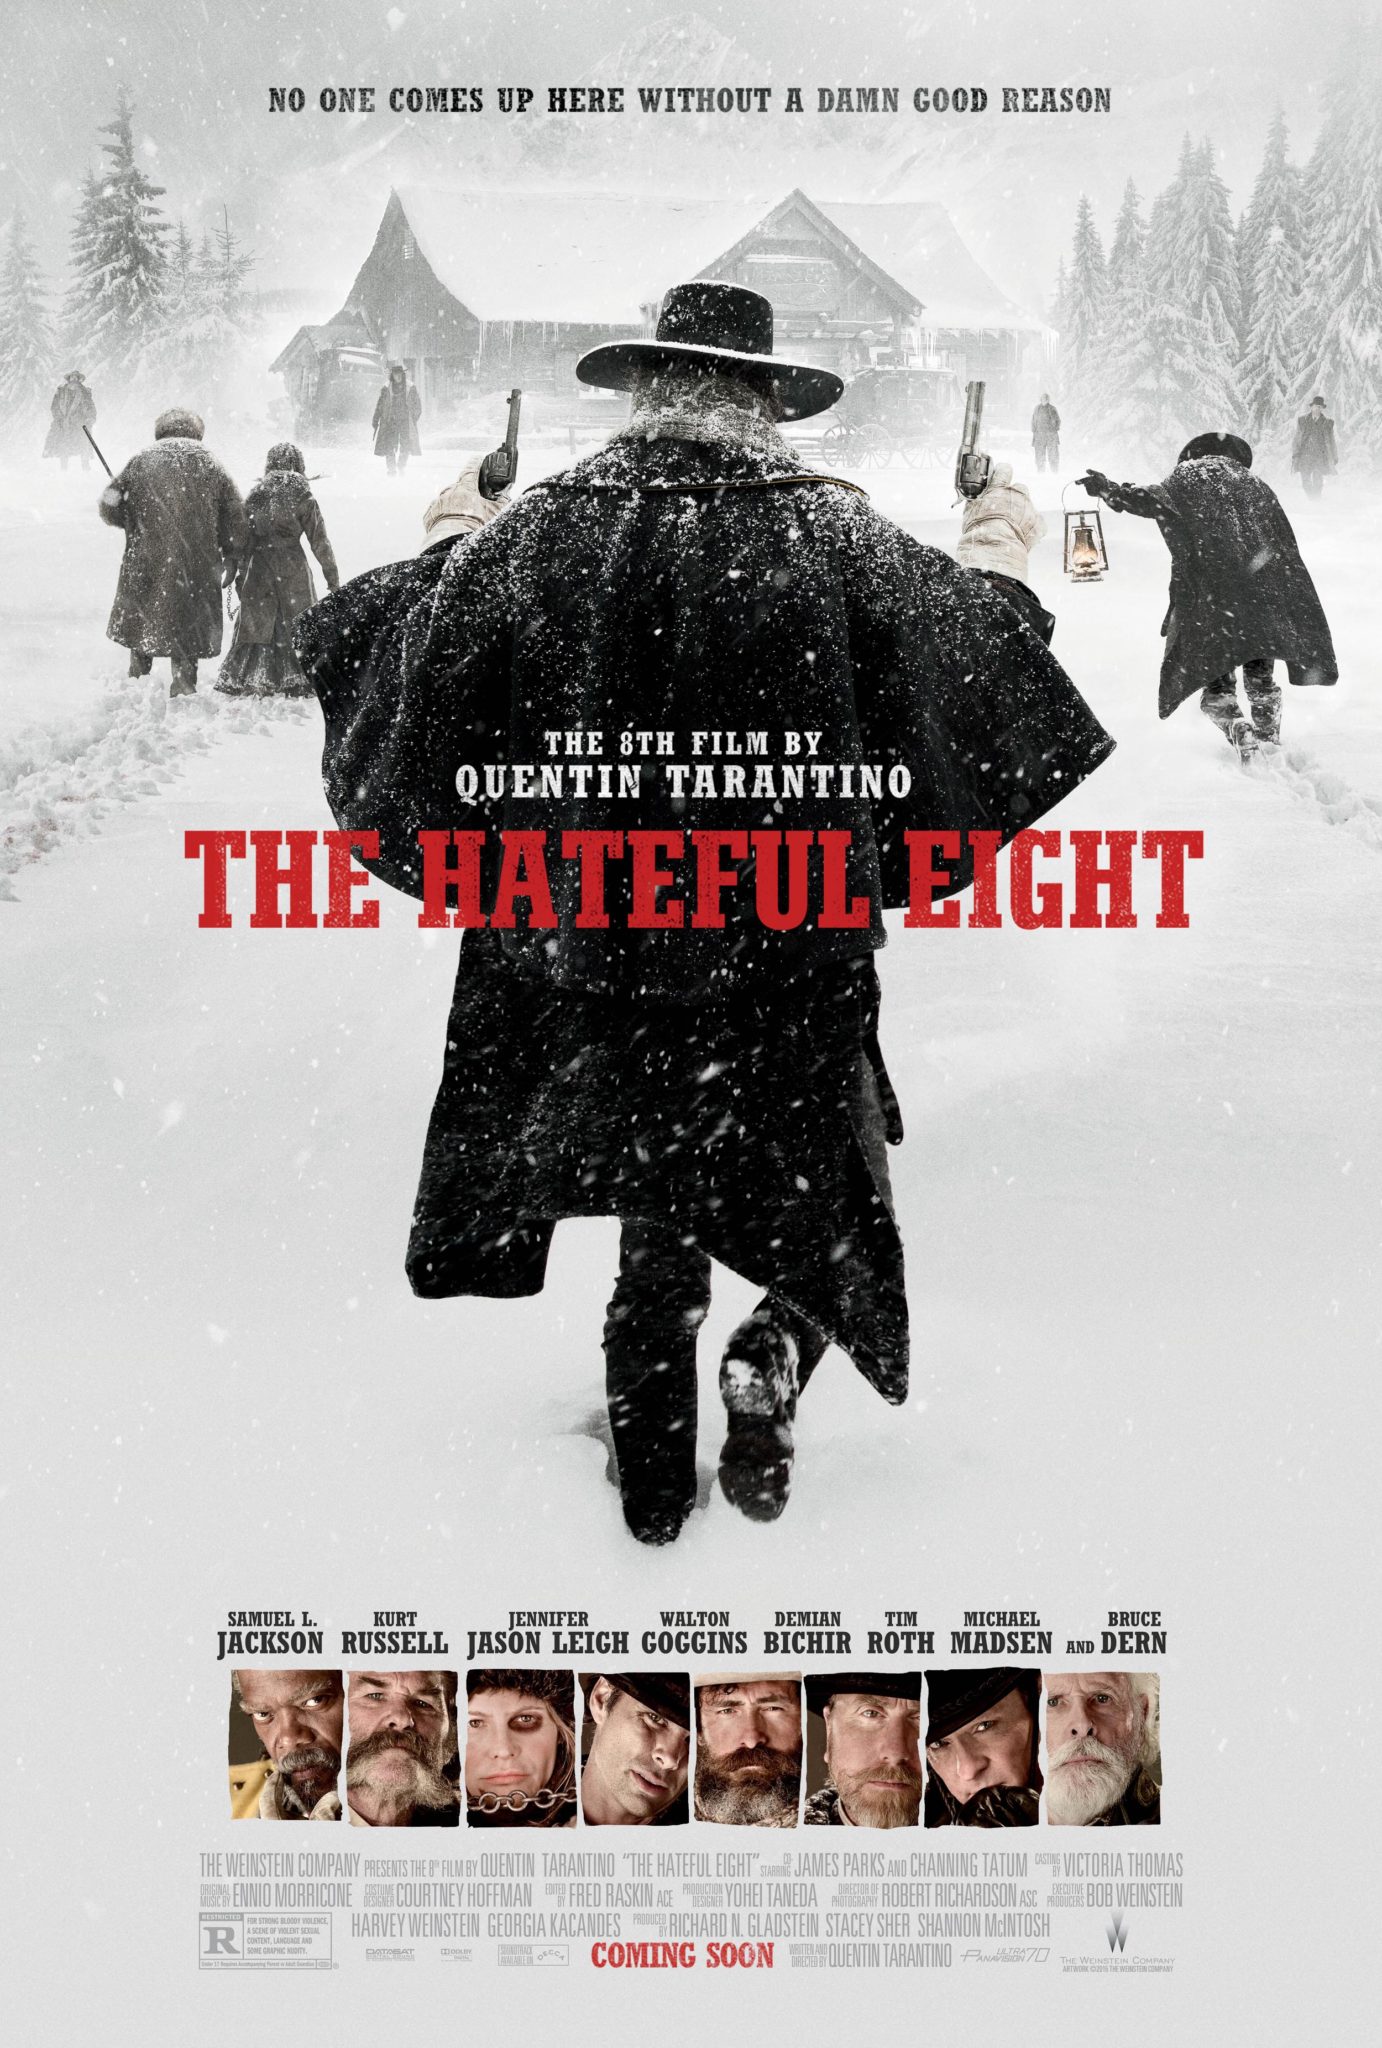 The Hateful Eight, l’ottavo film di Quentin Tarantino. An honour beyond words